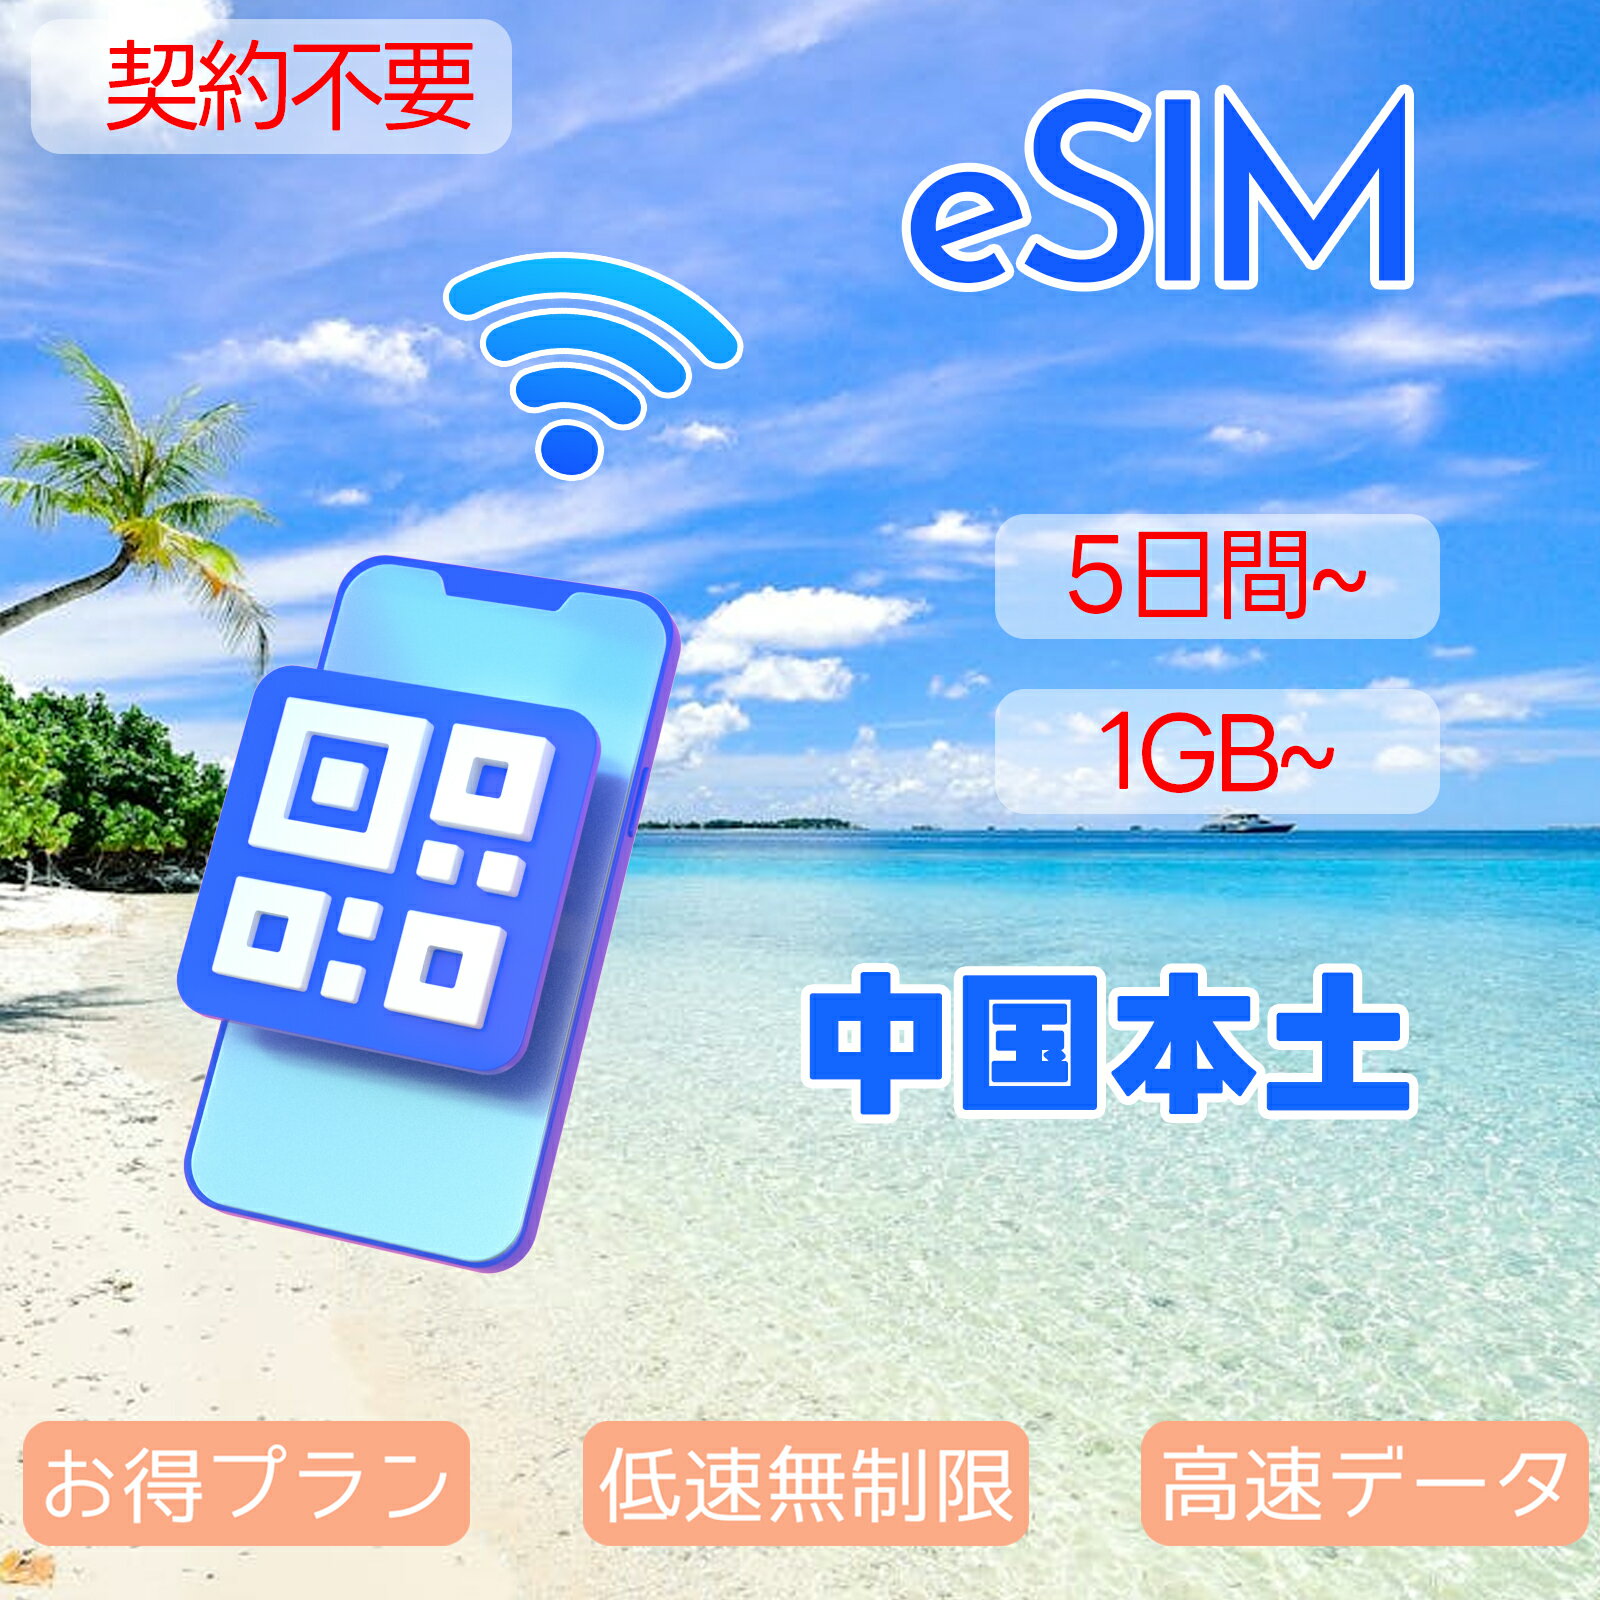 商品情報 SIMタイプ eSIM 対応地域 中国本土、香港、マカオ。 台湾は対応地域に含めておりません。 Can be used in the following regions: Mainland China, Hong Kong, Macau. Not available in Taiwan. 商品内容 中国本土eSIM、香港eSIM、マカオeSIM 注意事項 電話およびSMSの機能がありません。 30日以内に携帯電話に登録してください。それ以降は期限切れとなります。 登録されたeSIMが現地で自動的にアクティベートされます。 海外に行く1日前にeSIMのQRコードをスキャンすることをお勧めいたします。 ご注意：eSIM通信プランに日本が含まれている場合、日本で設定とアクティベート当日に時間がカウントされます。 10日間のデータプランは、3月20日18時に設定する場合、29日23時59分59秒までご利用いただけます。 期間切れとなったら、手動で削除をお願いいたします。